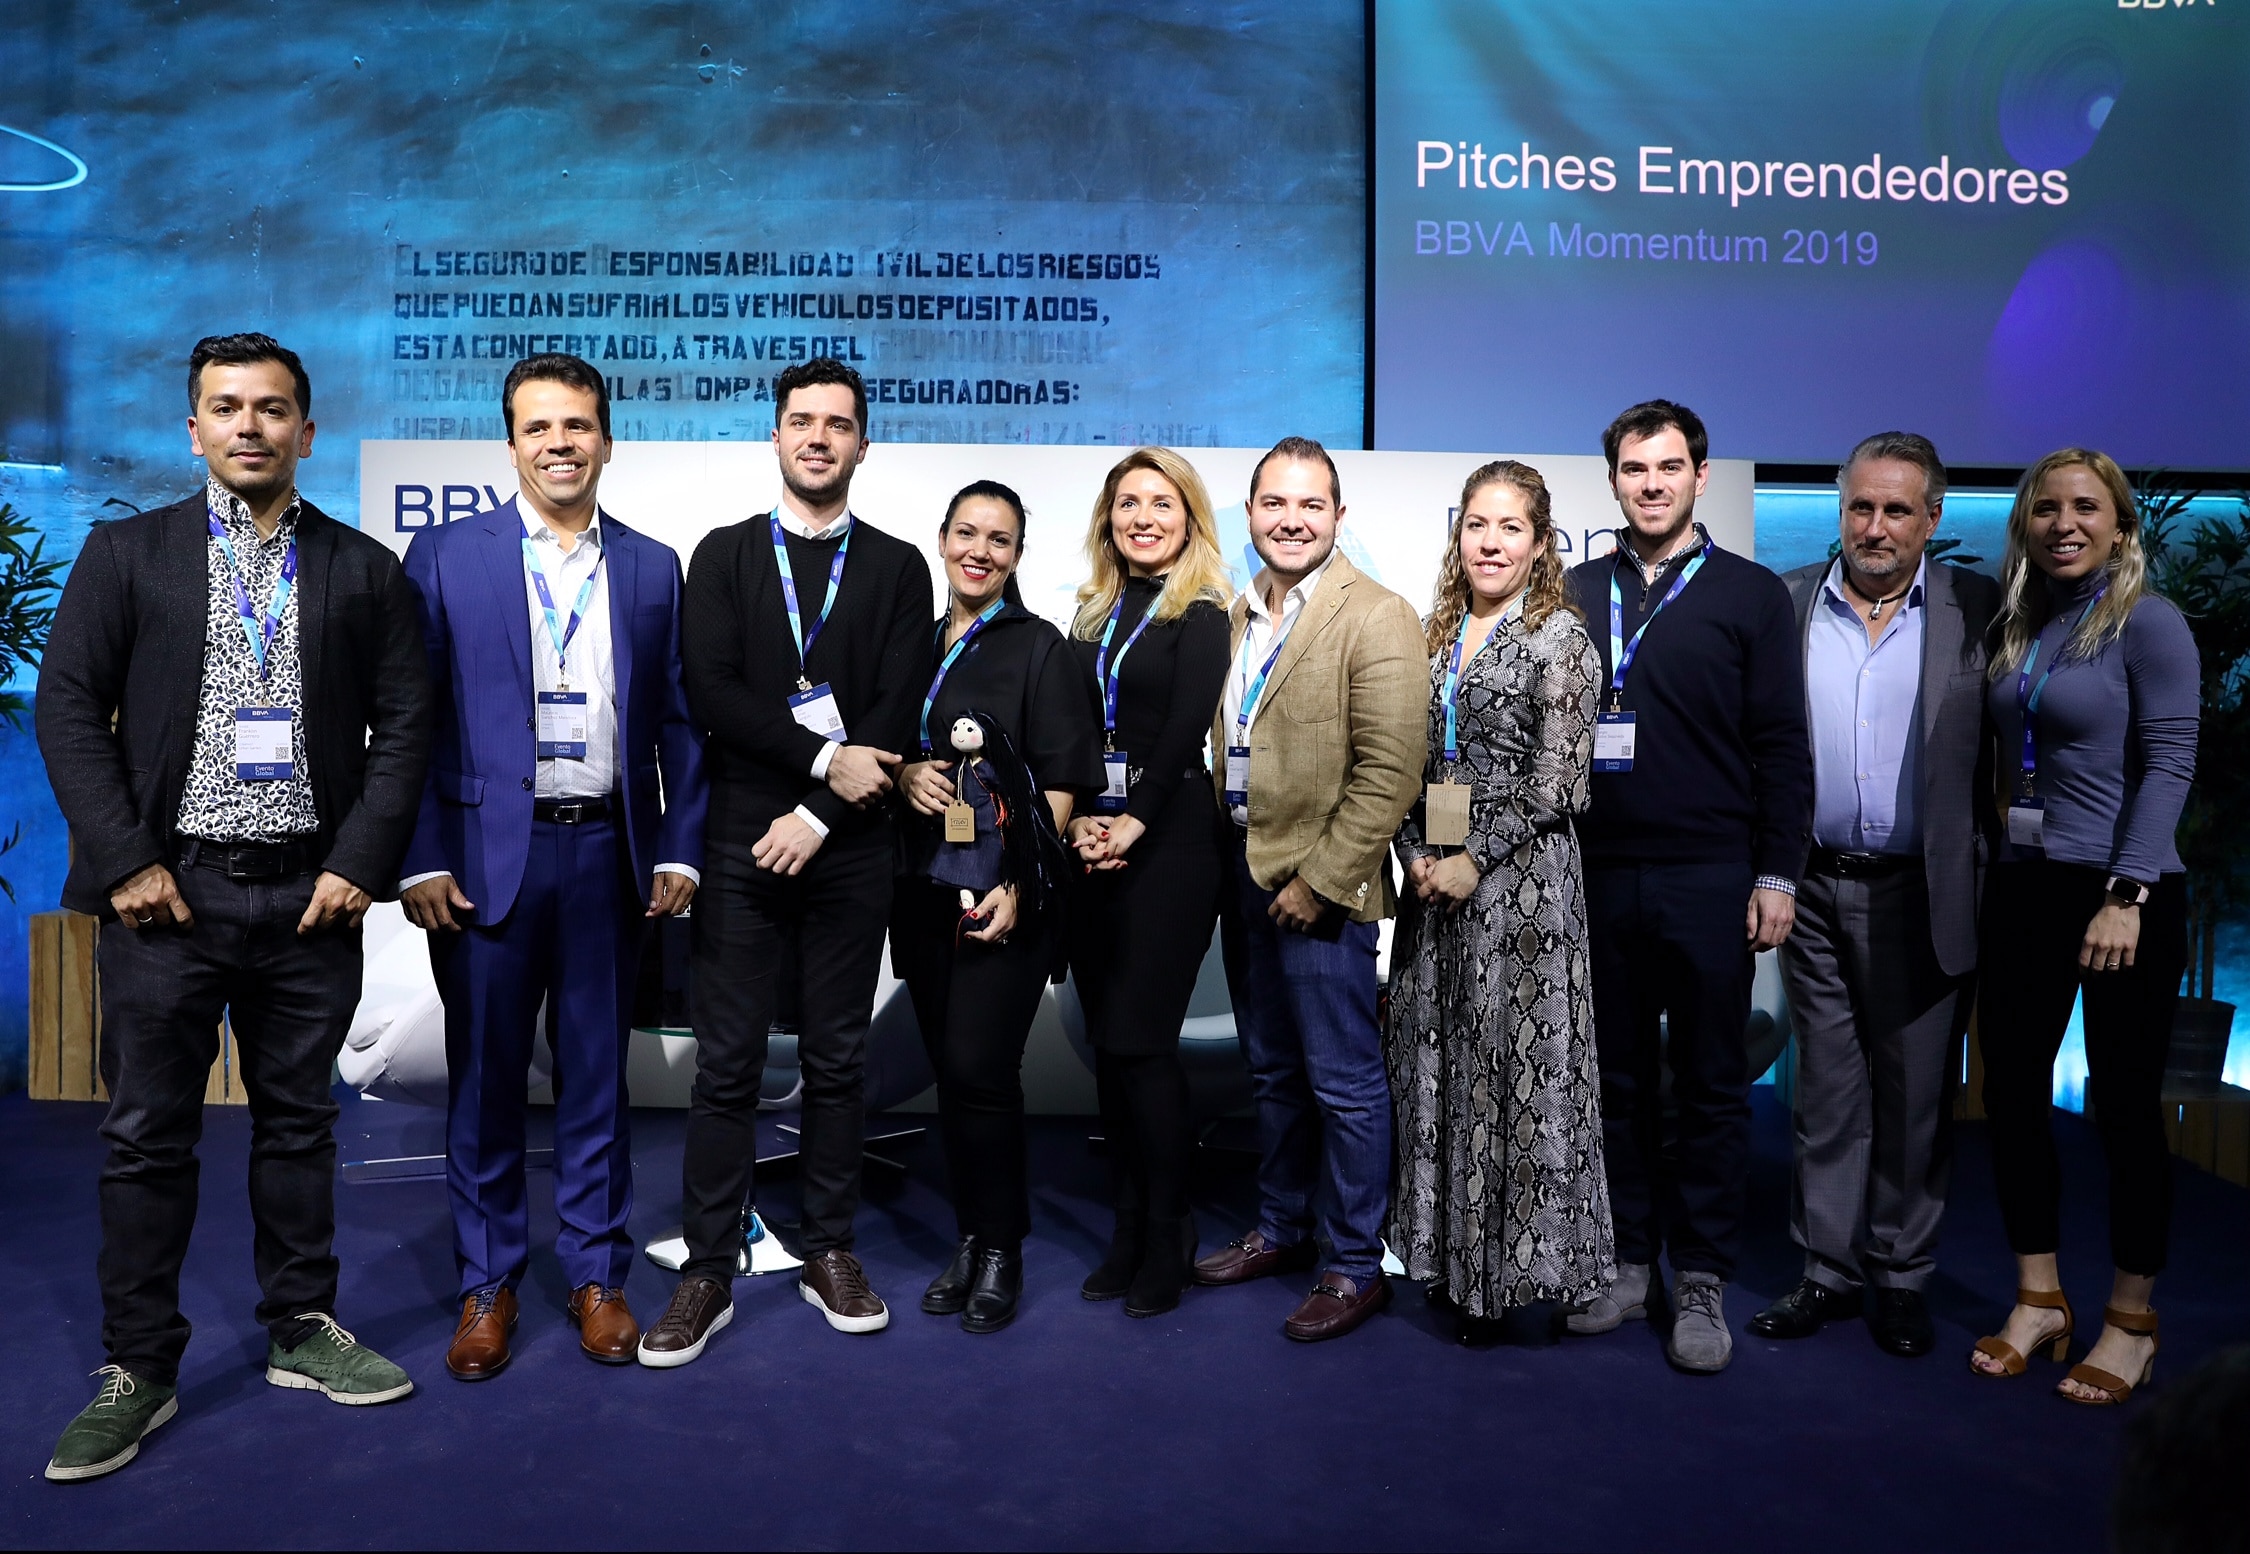 Emprendedores BBVA Momentum 2019